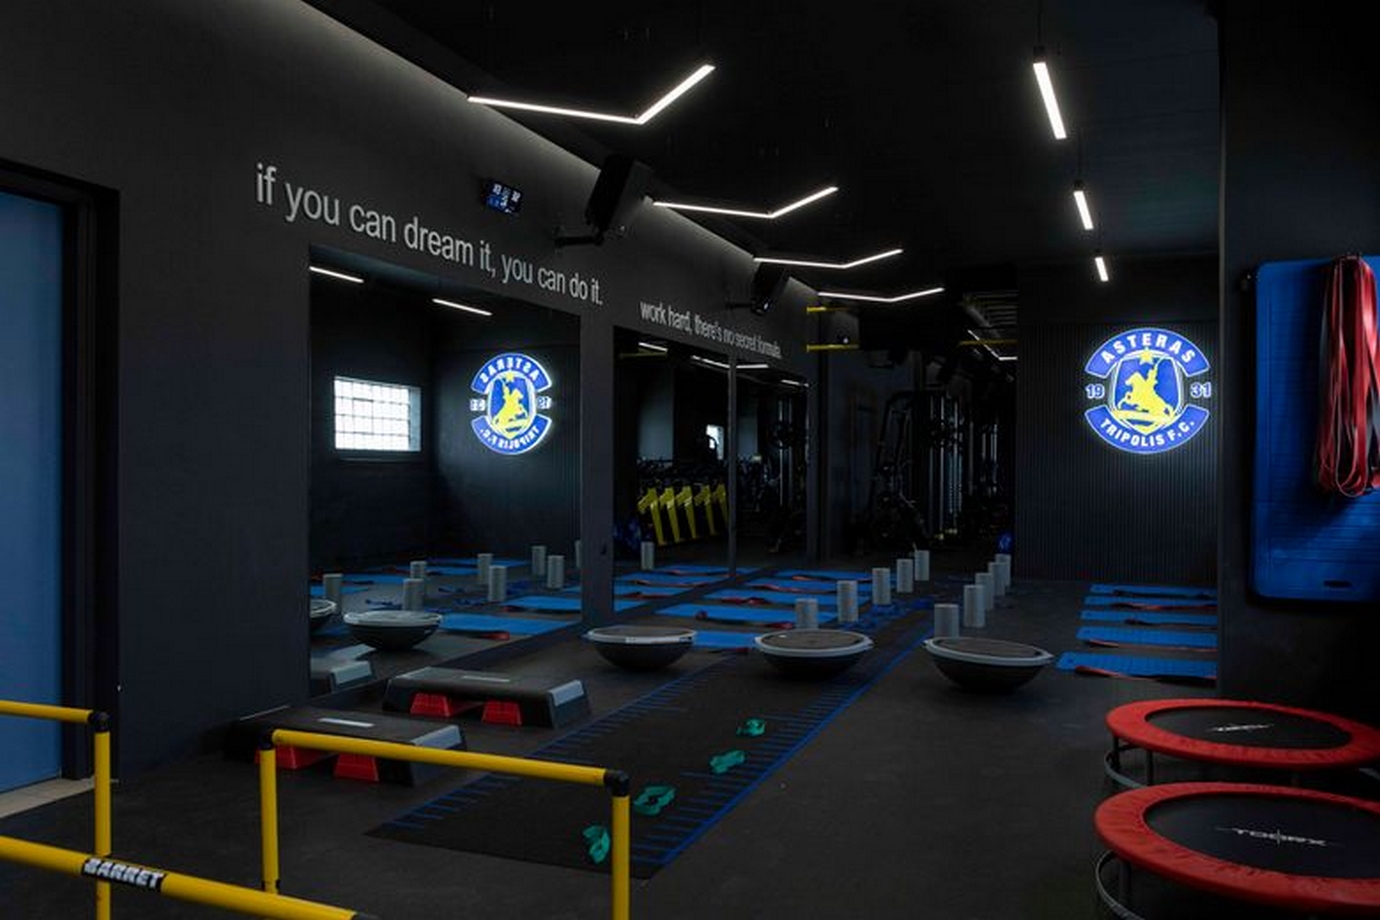 Ο Αστέρας Τρίπολης παρουσίασε το νέο υπερσύγχρονο γυμναστήριο της ομάδας